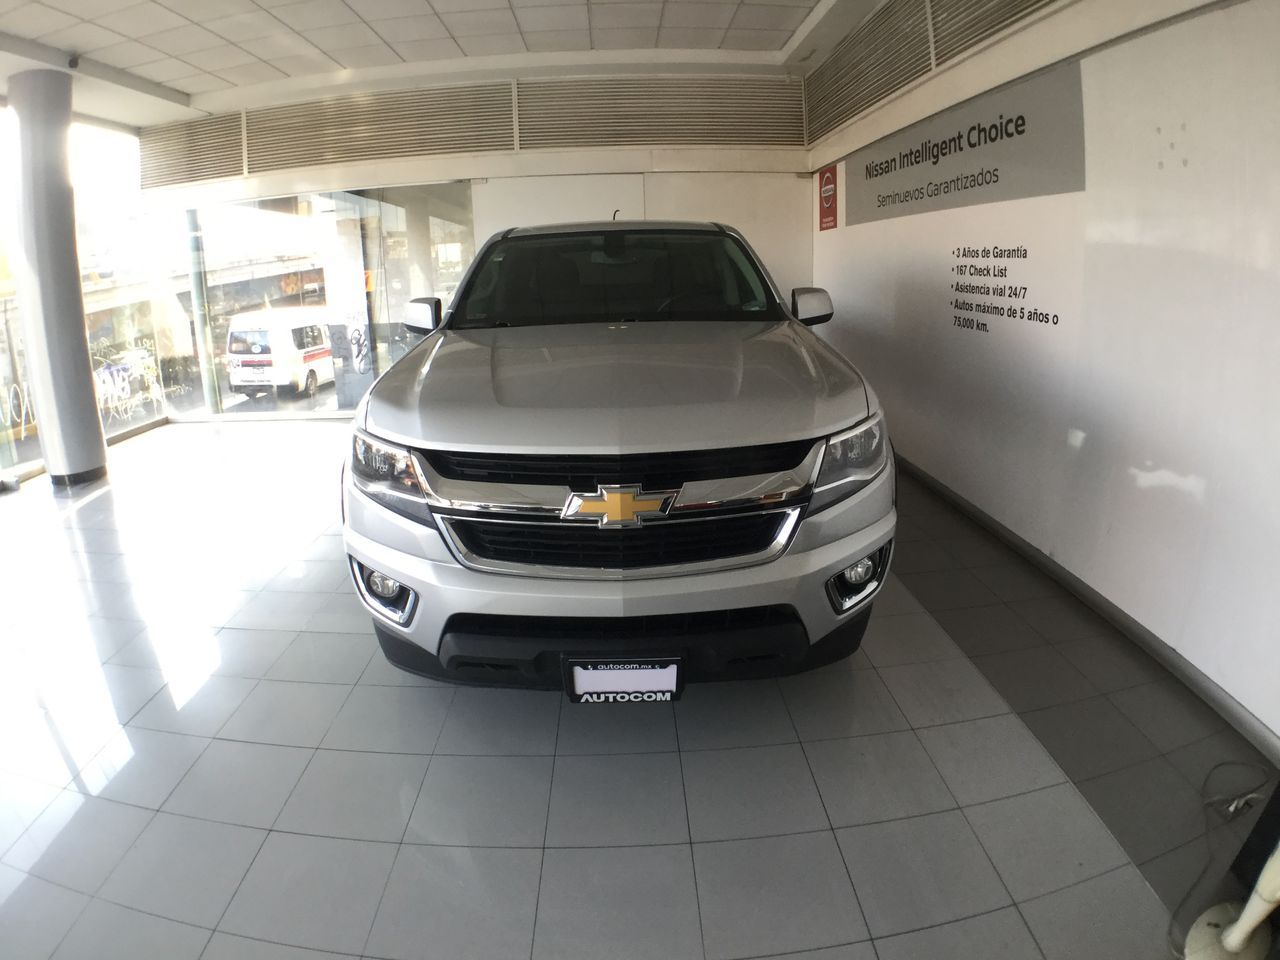 Chevrolet Colorado 2018